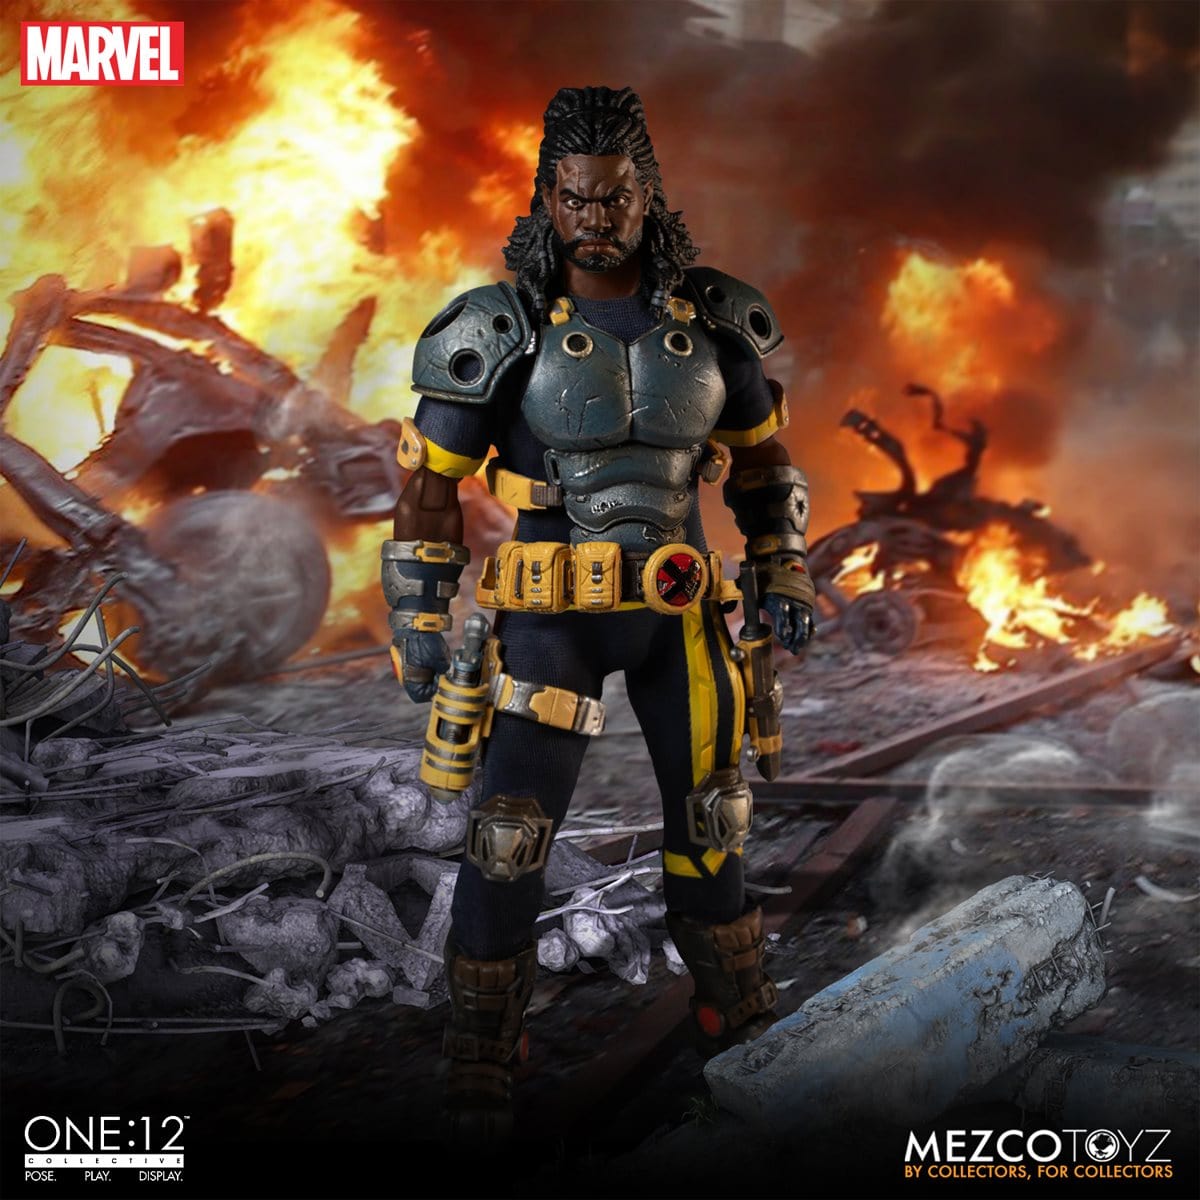 X-Men Bishop One:12 Collective Action Figure - Pop-O-Loco - Mezco